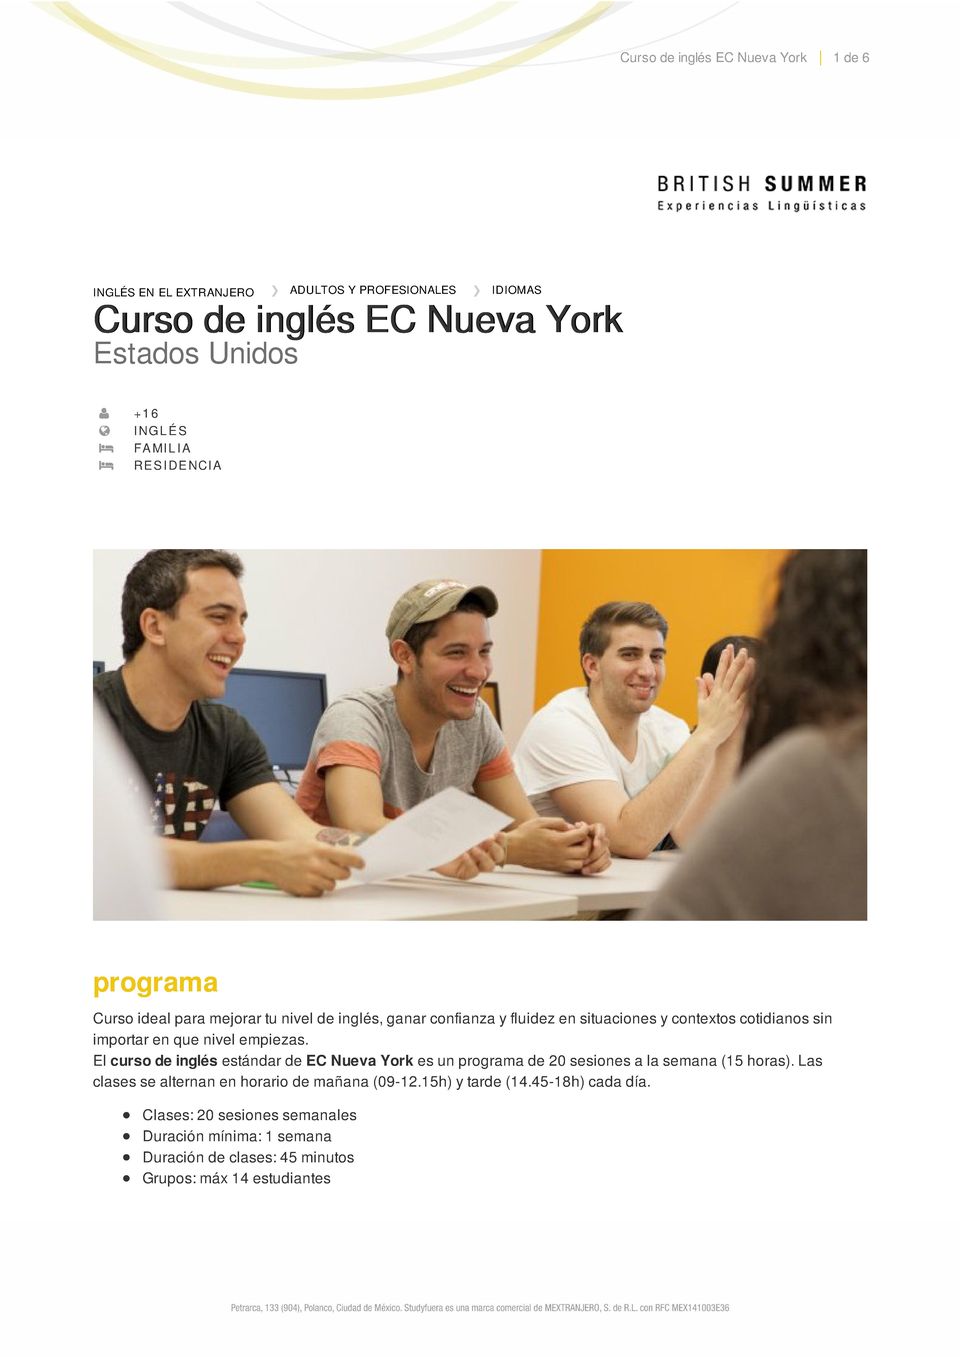 que nivel empiezas. El curso de inglés estándar de EC Nueva York es un programa de 20 sesiones a la semana (15 horas).